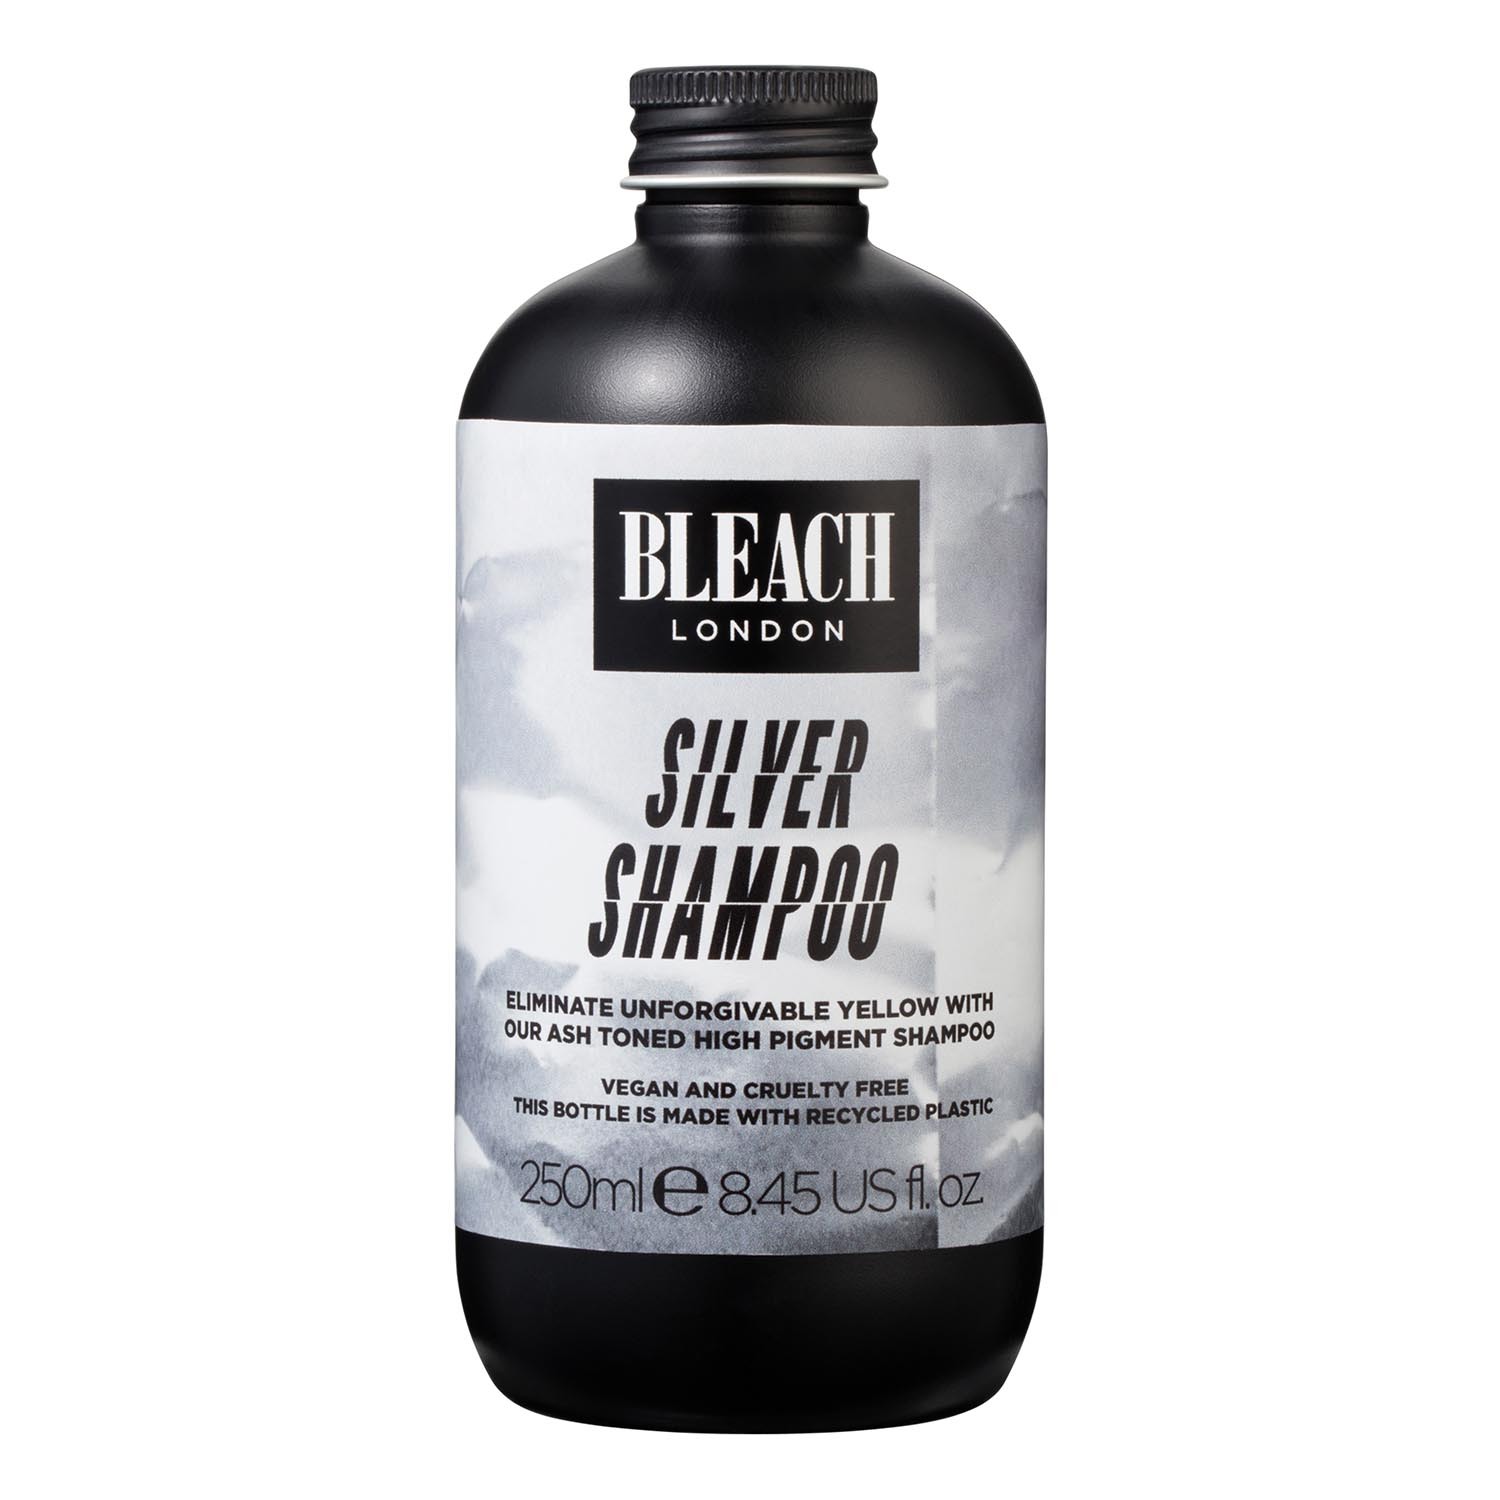 Bleach London Silver Shampoo 250ml - Black Image